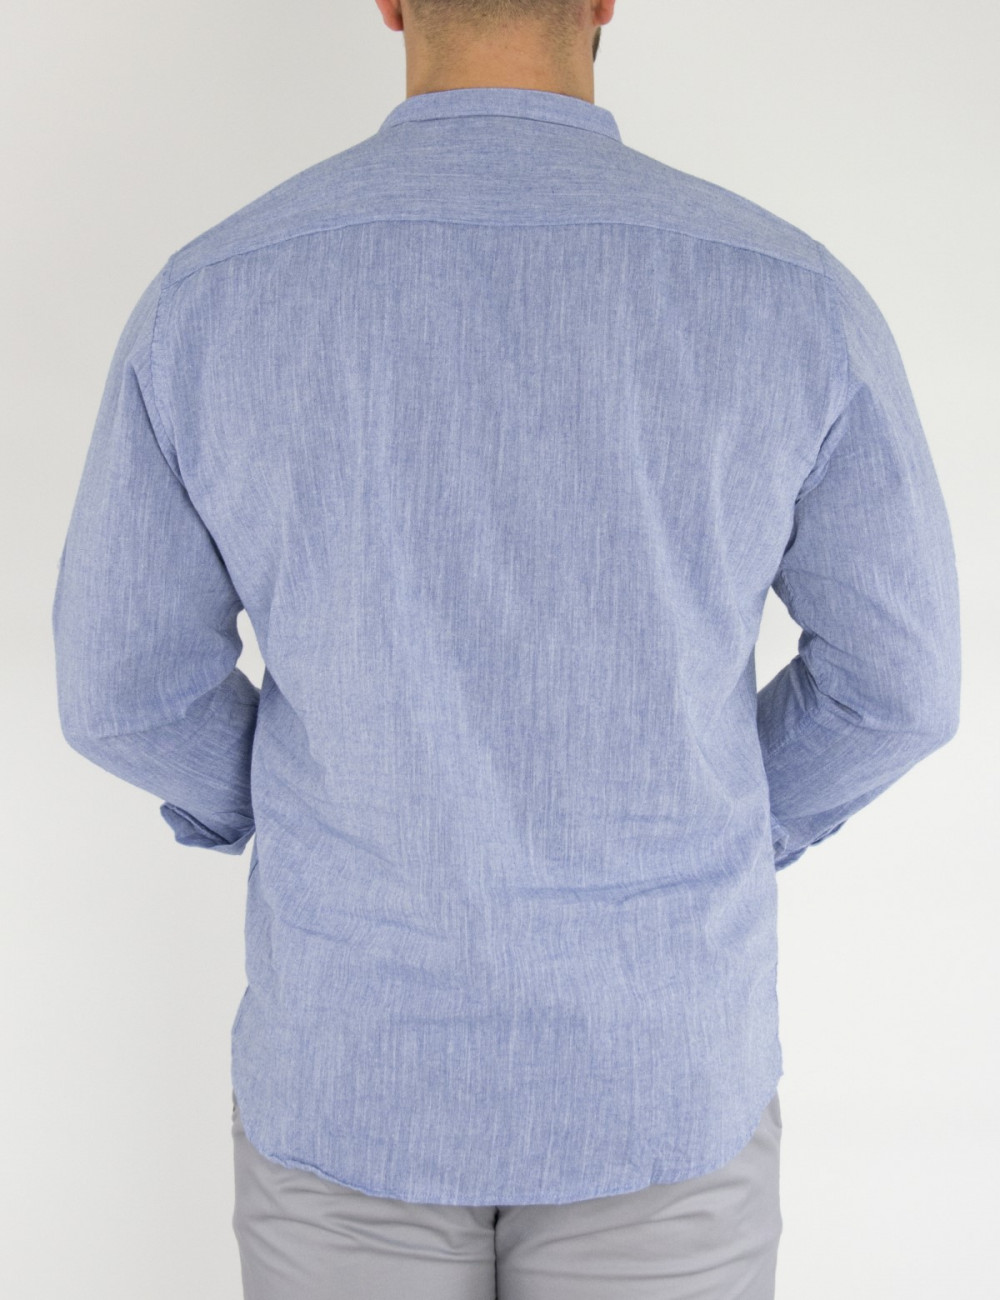 Ανδρική πουκαμίσα βαμβακερή μπλε με μάο γιακά SL151B